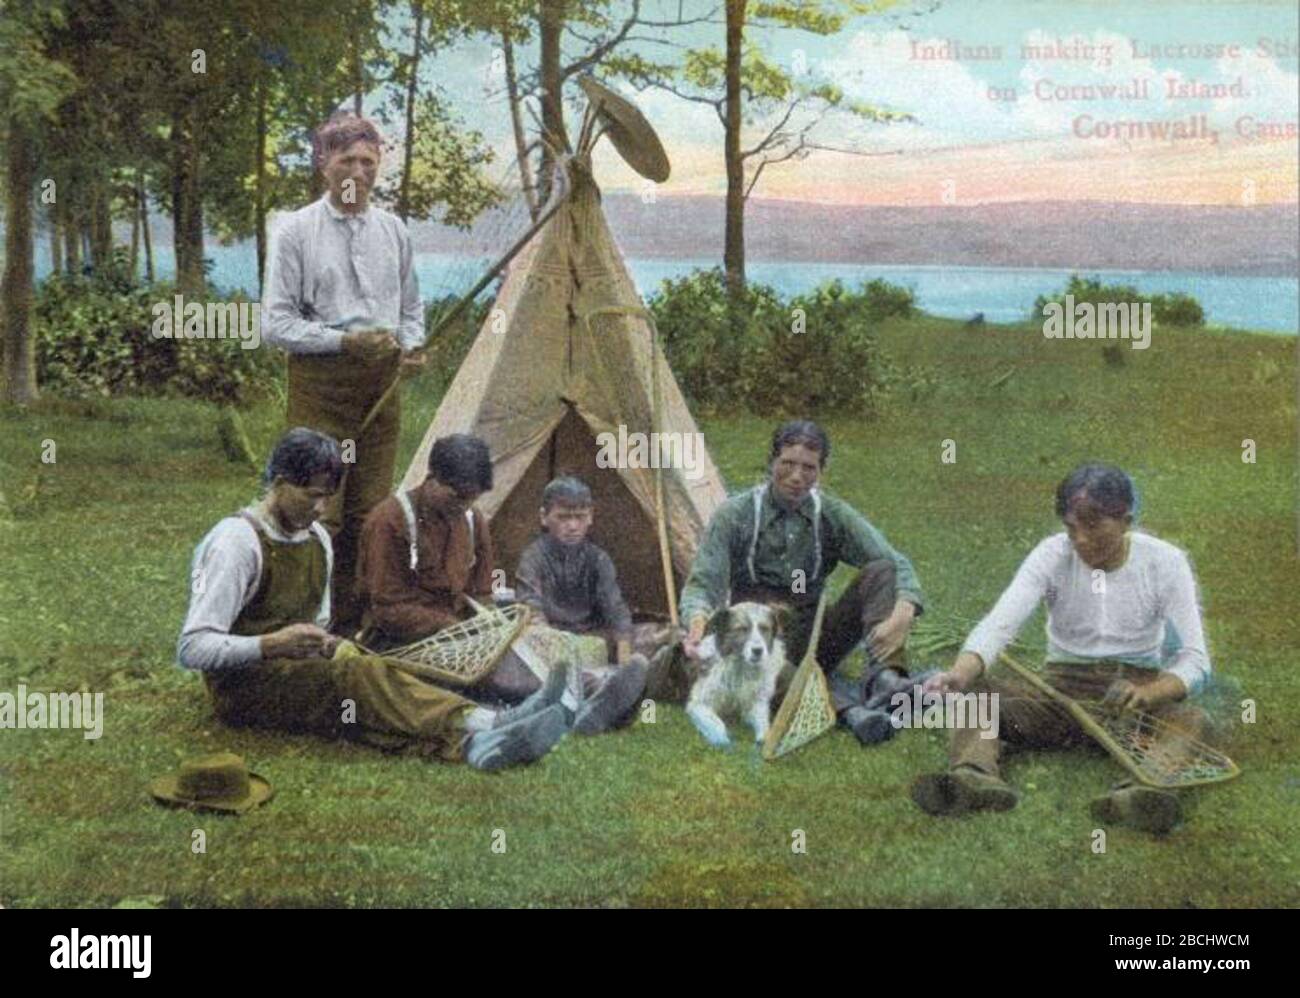 Inglés: Impresión (fotomecánica), aborígenes haciendo palos lacrosse,  Cornwall Island, SOBRE, alrededor de 1910, tinta de color en el papel  montado en la tarjeta - fotolitografía - 8.8 x 12.9 cm Fran√ßais¬†:  Impression (